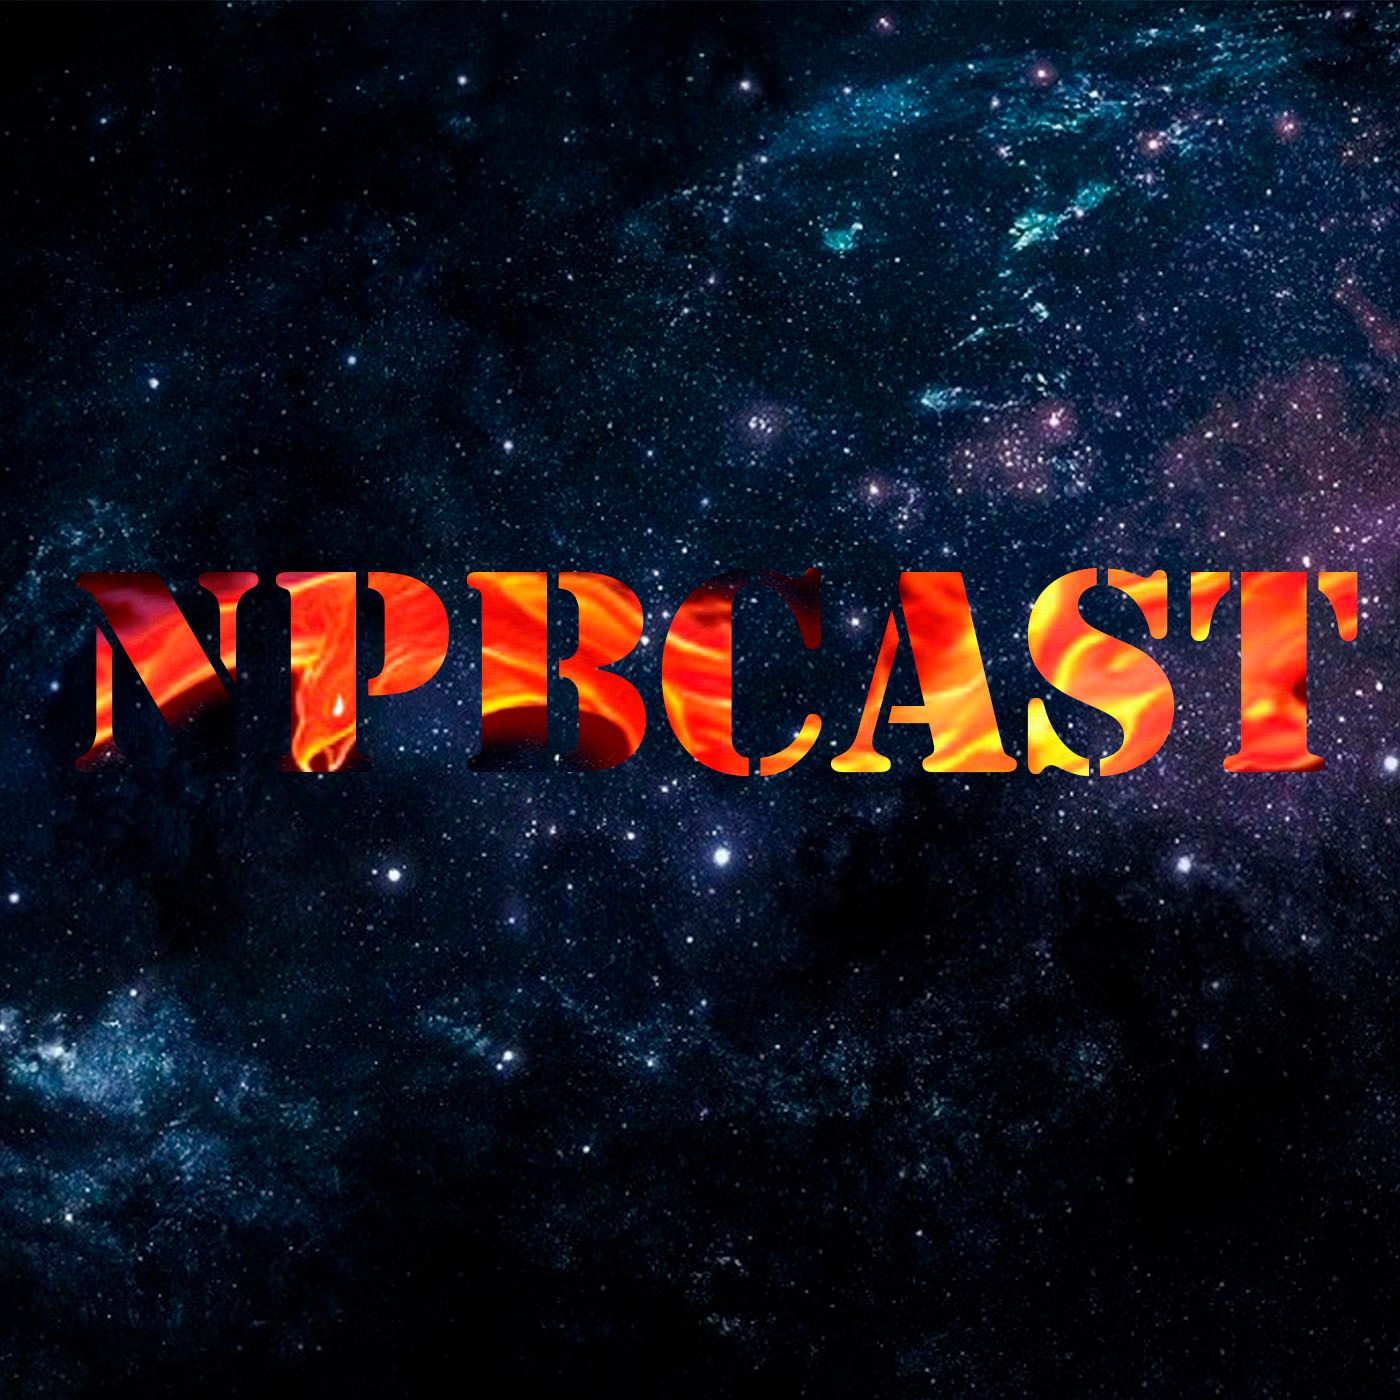 NPBcast